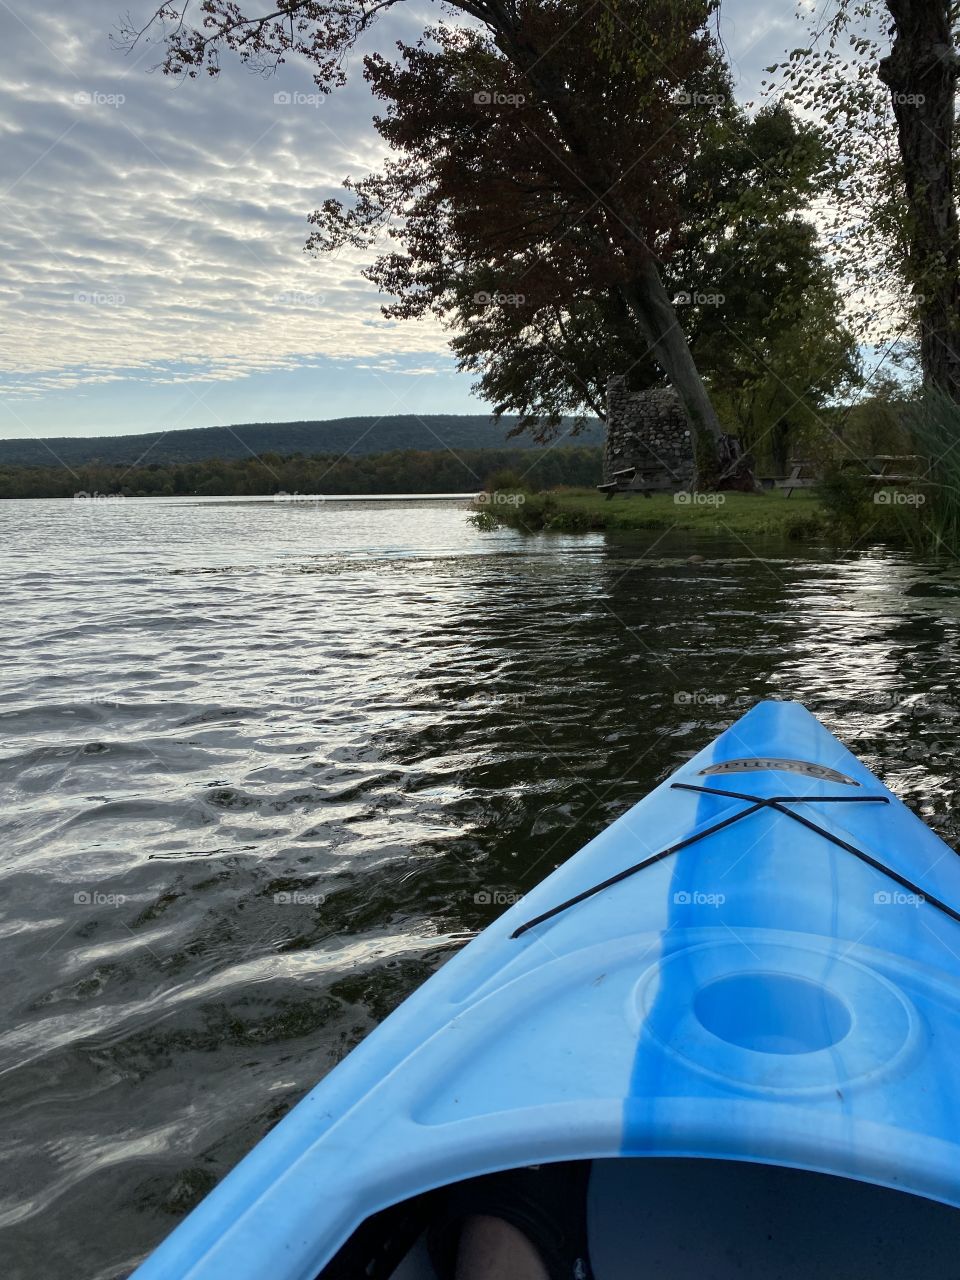 Fall kayaking